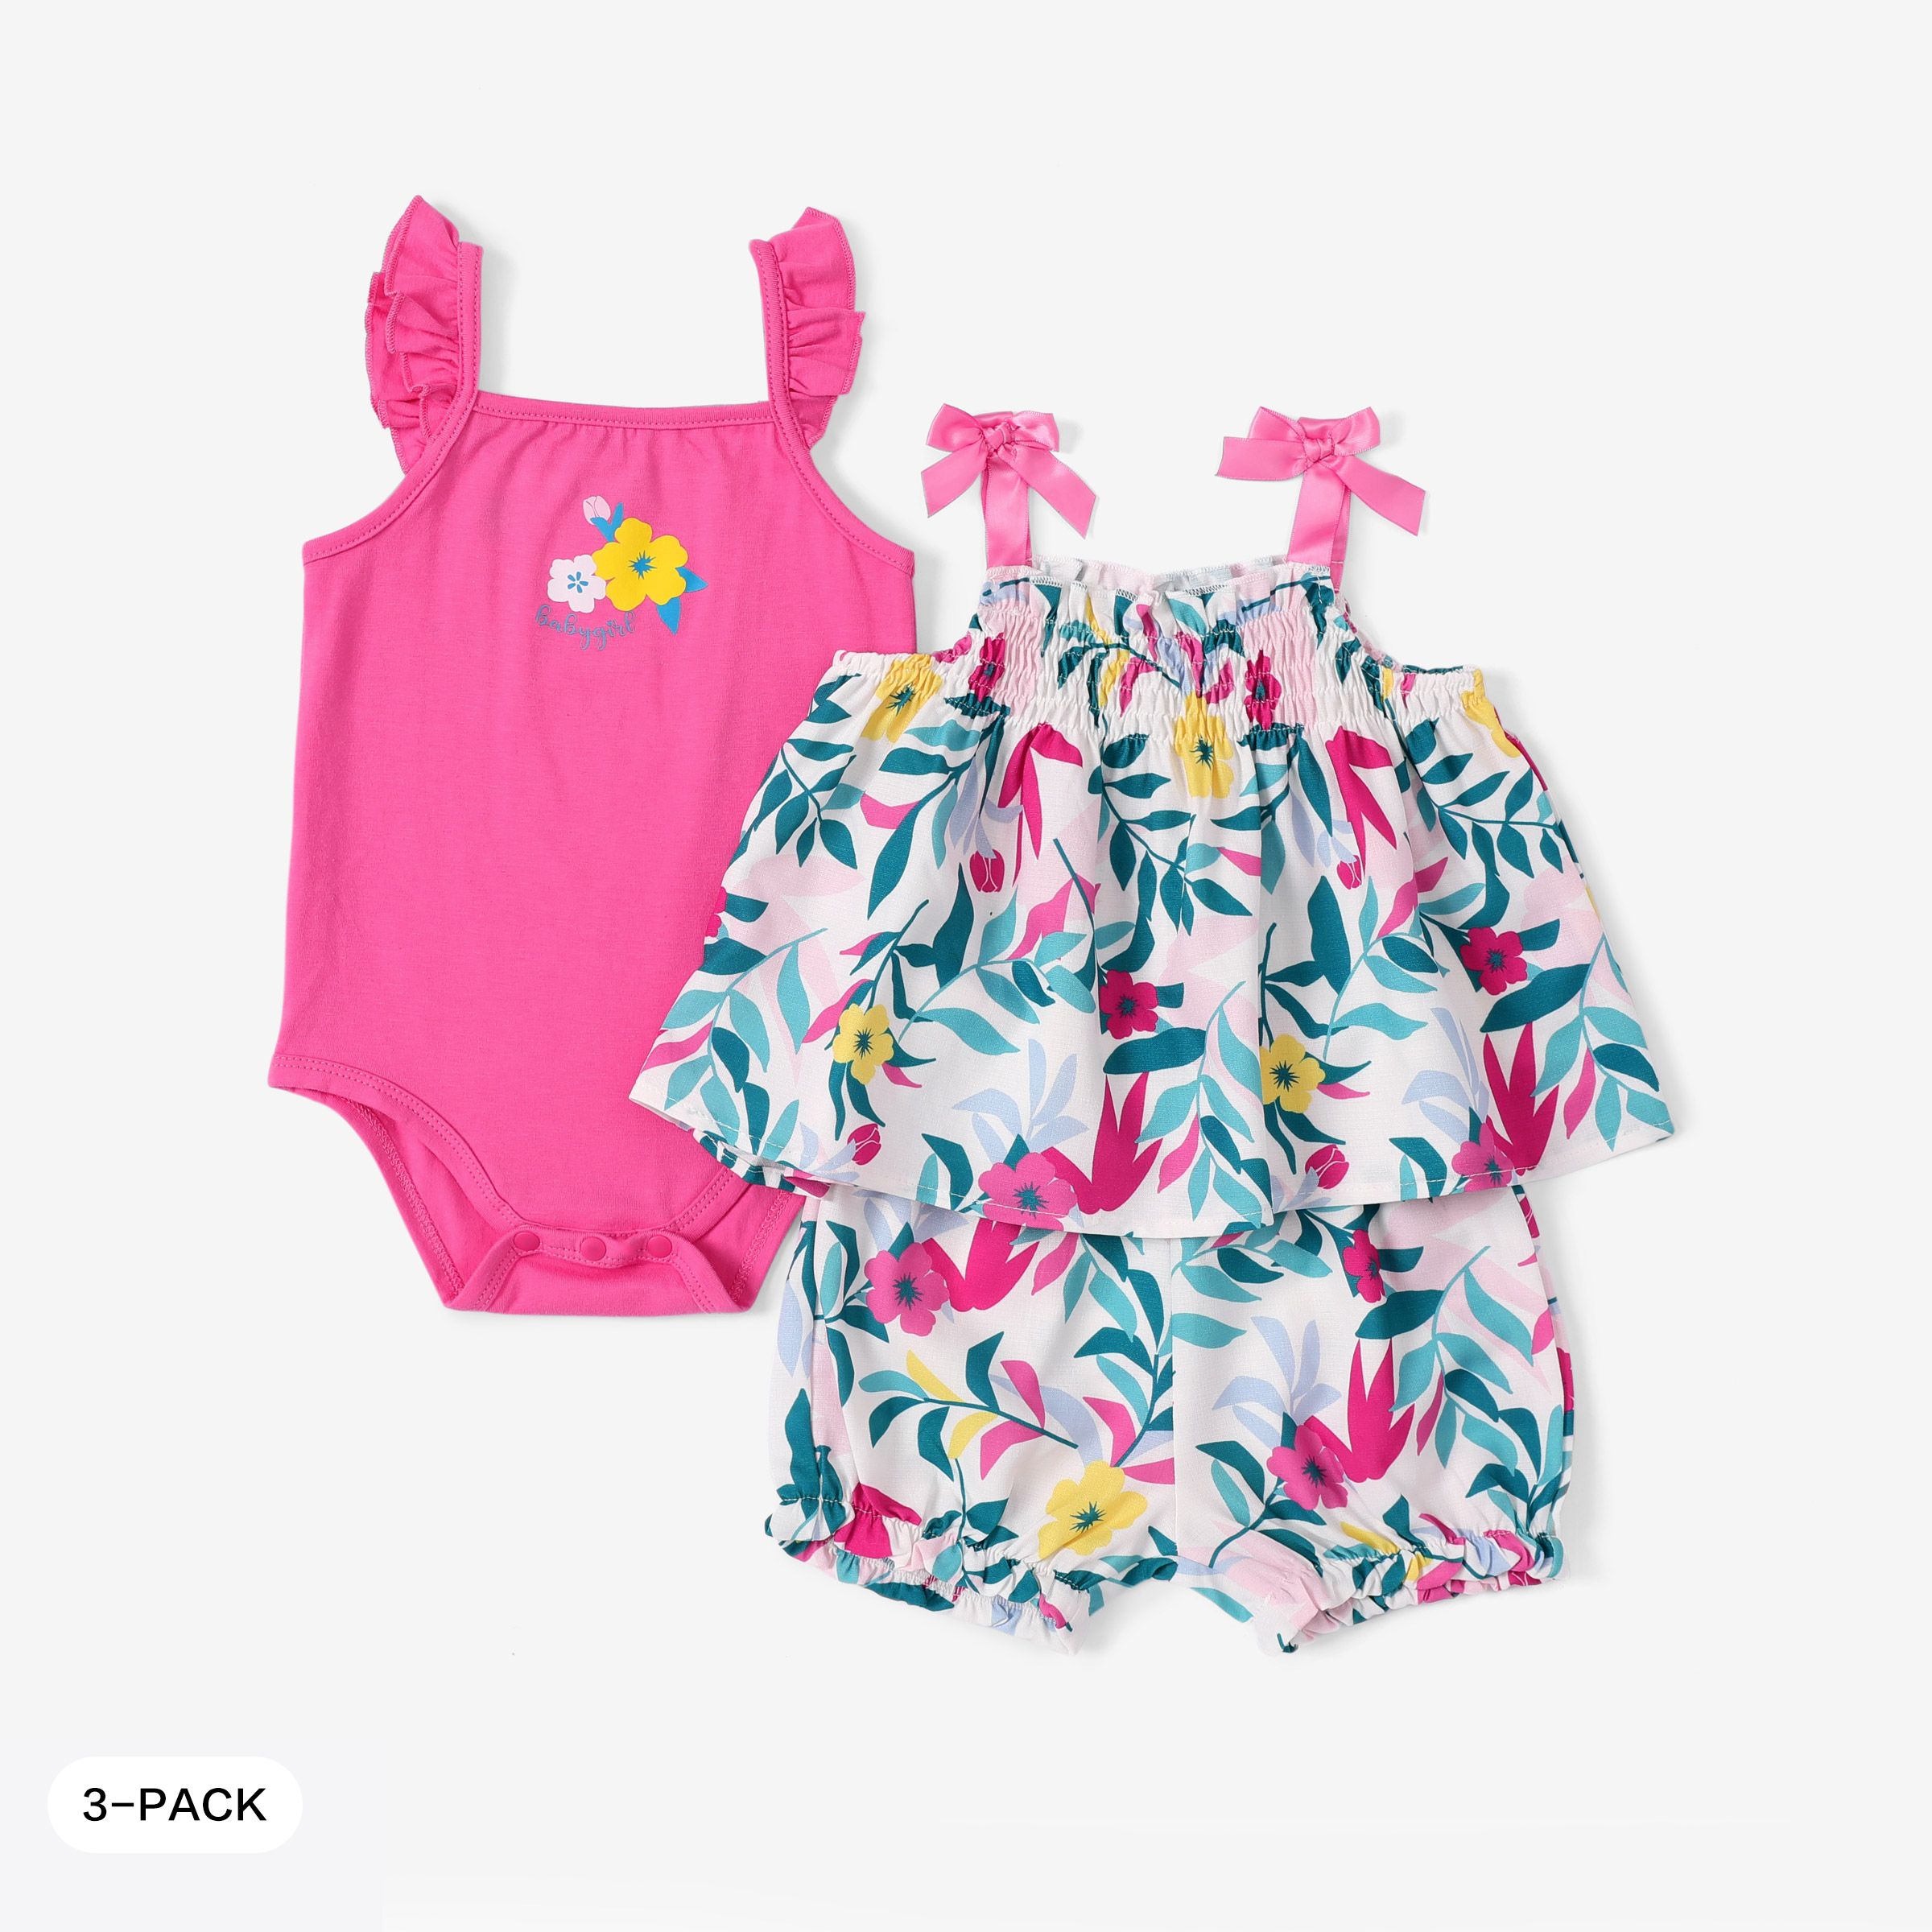 Baby Girl 3件裝荷葉邊連體褲和花卉印花吊帶上衣和短褲套裝